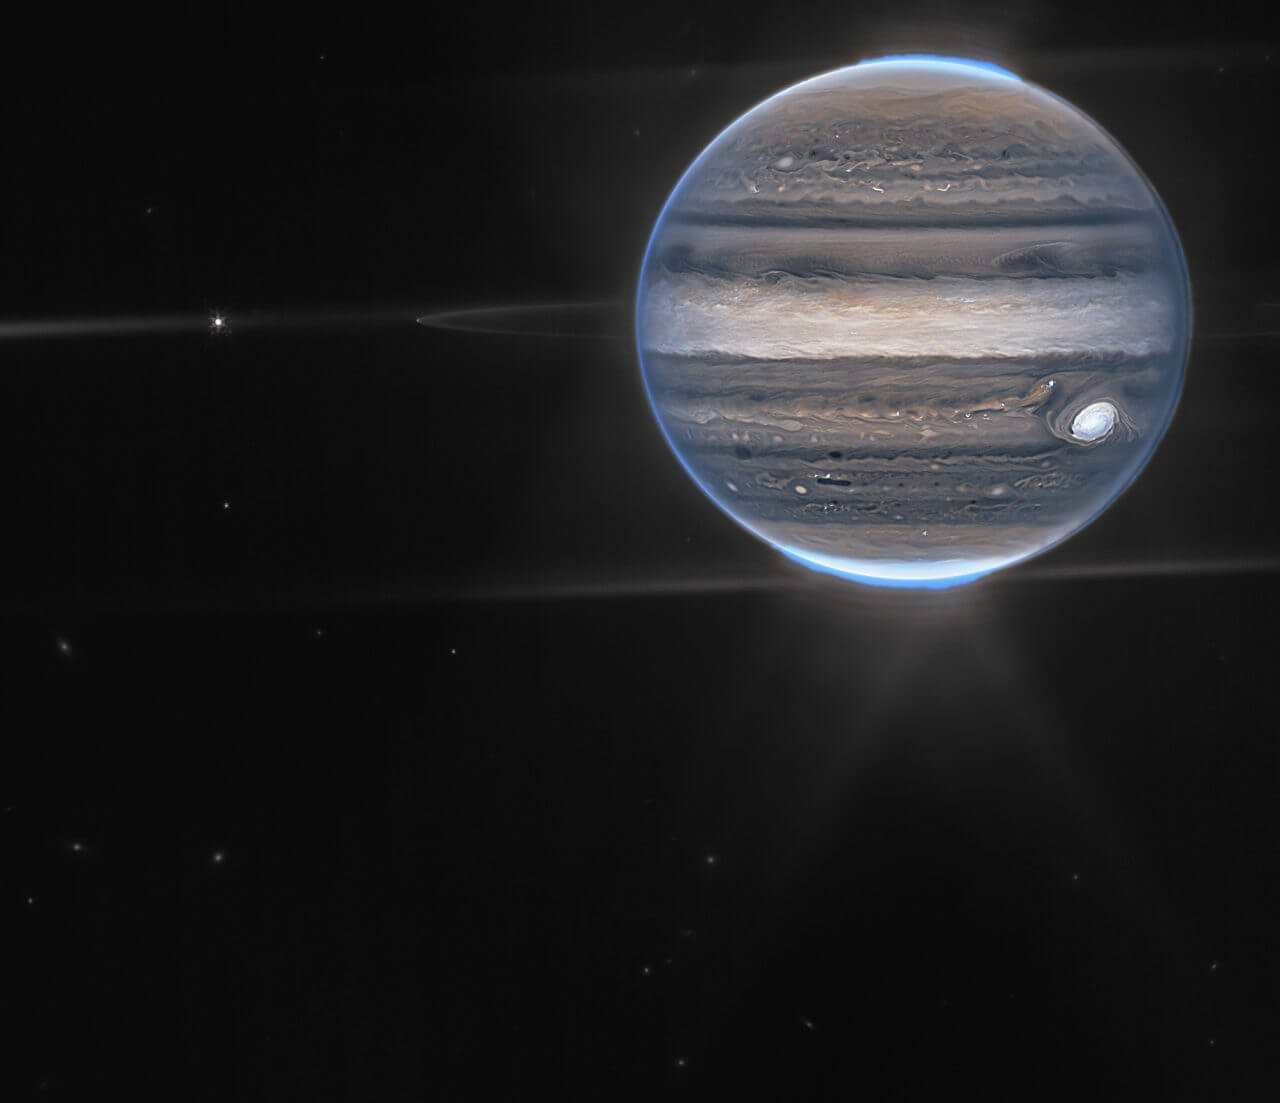 ウェッブ宇宙望遠鏡が撮影した「木星、環、衛星」【今日の宇宙画像】